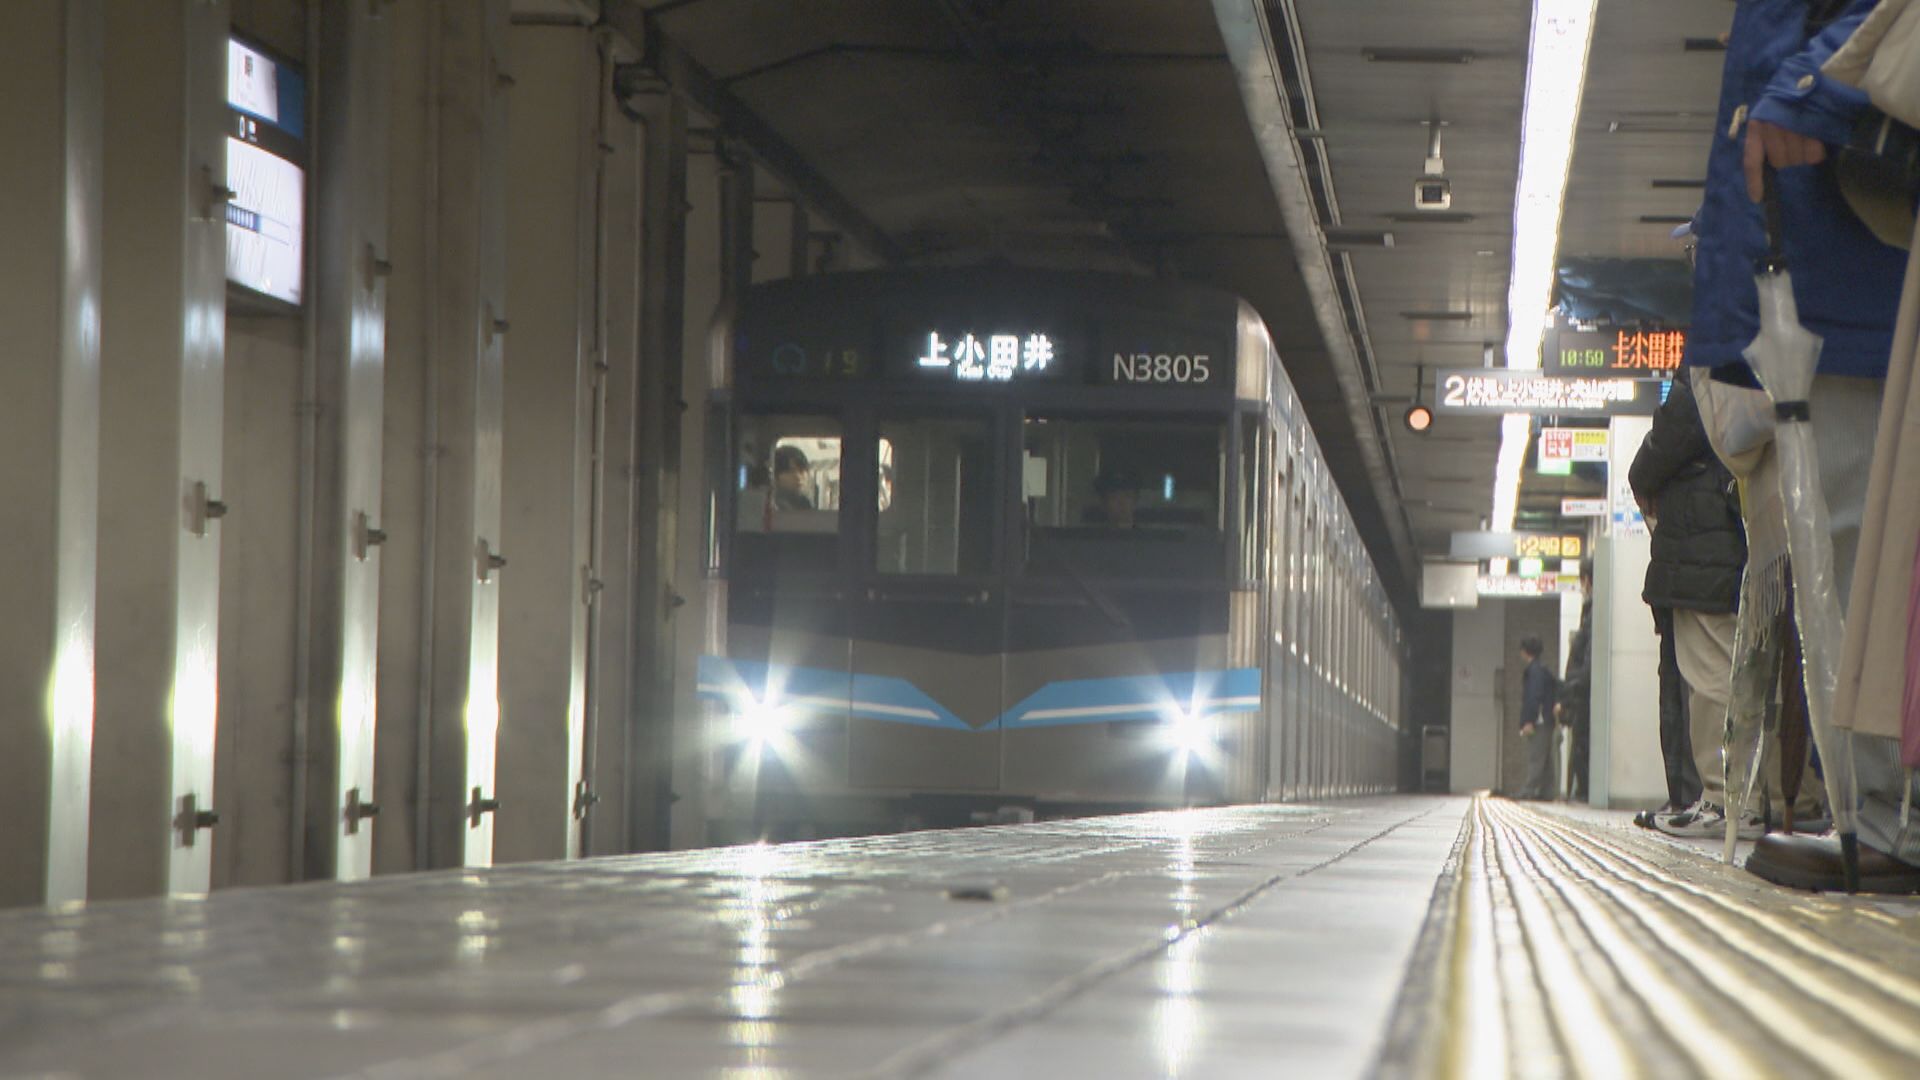 名古屋市営地下鉄「鶴舞線」ホーム柵の設置へ　9月から工事開始　約1か月に1駅ずつ計19駅に